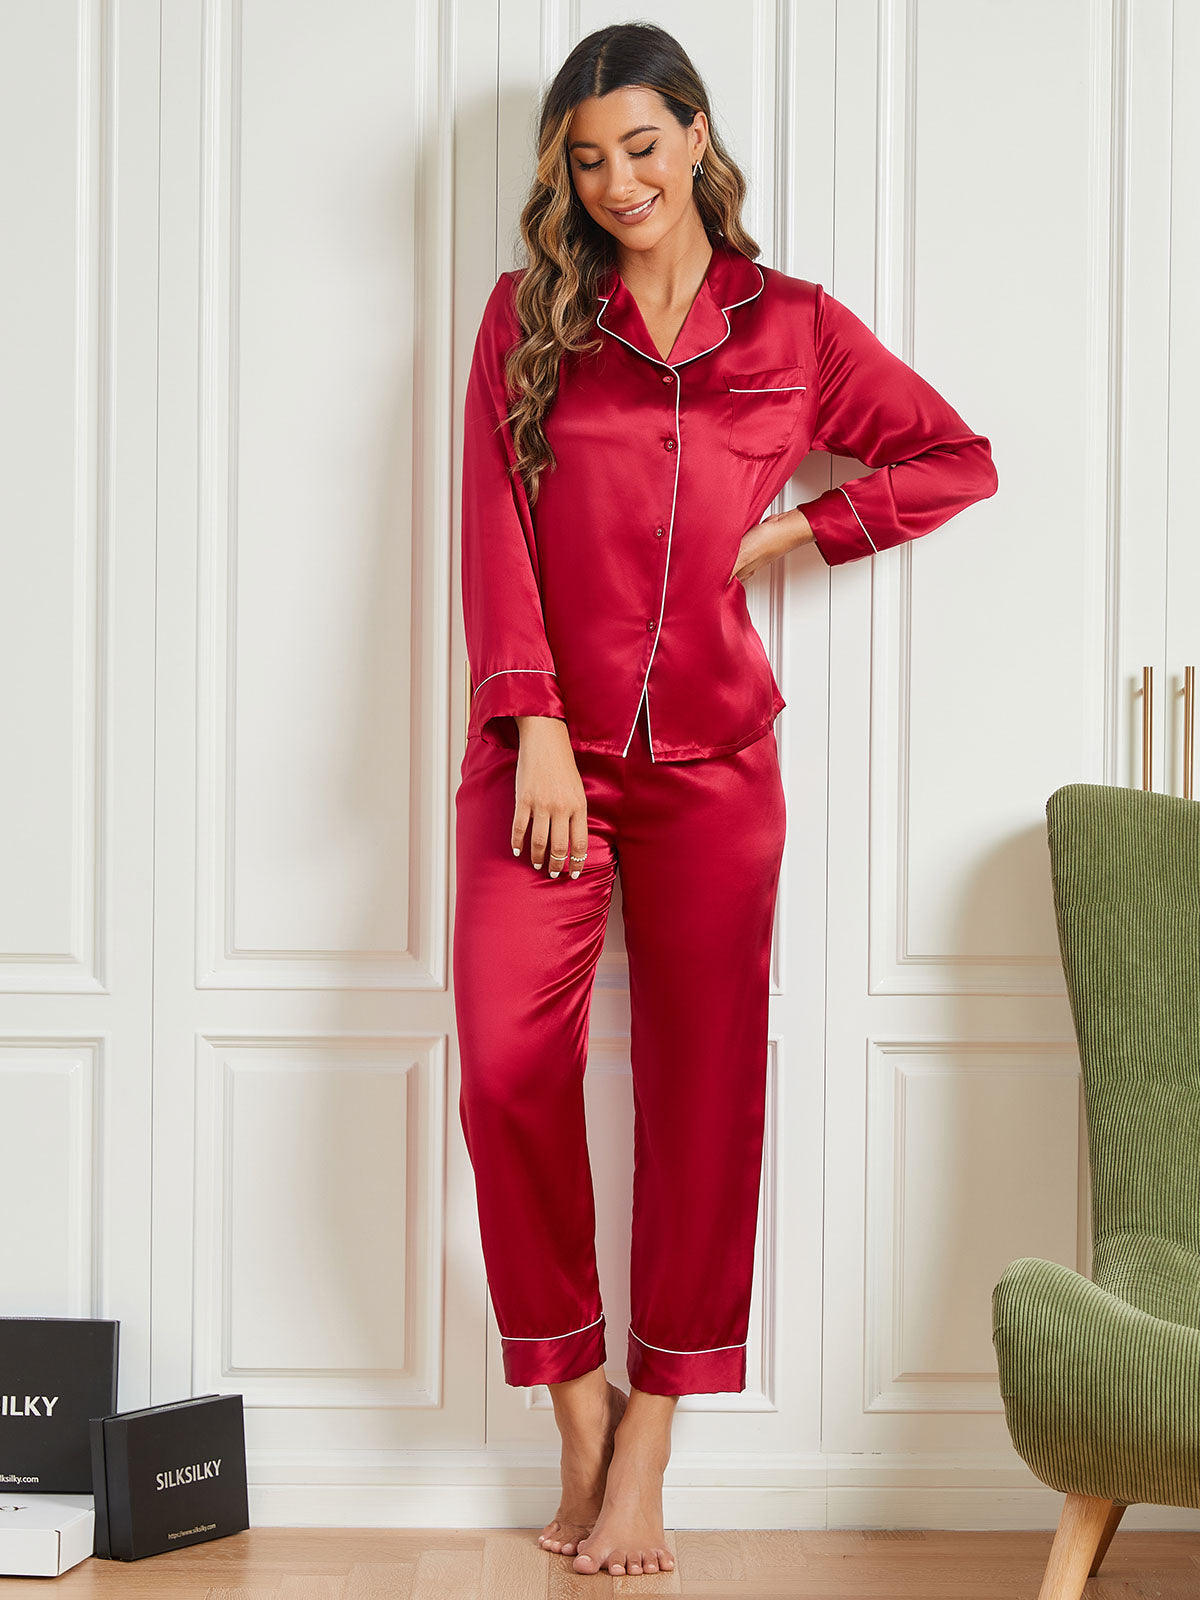 Silksilky Long Sleeve Silk Sleepwear Silk Pajamas for Her – SILKSILKY